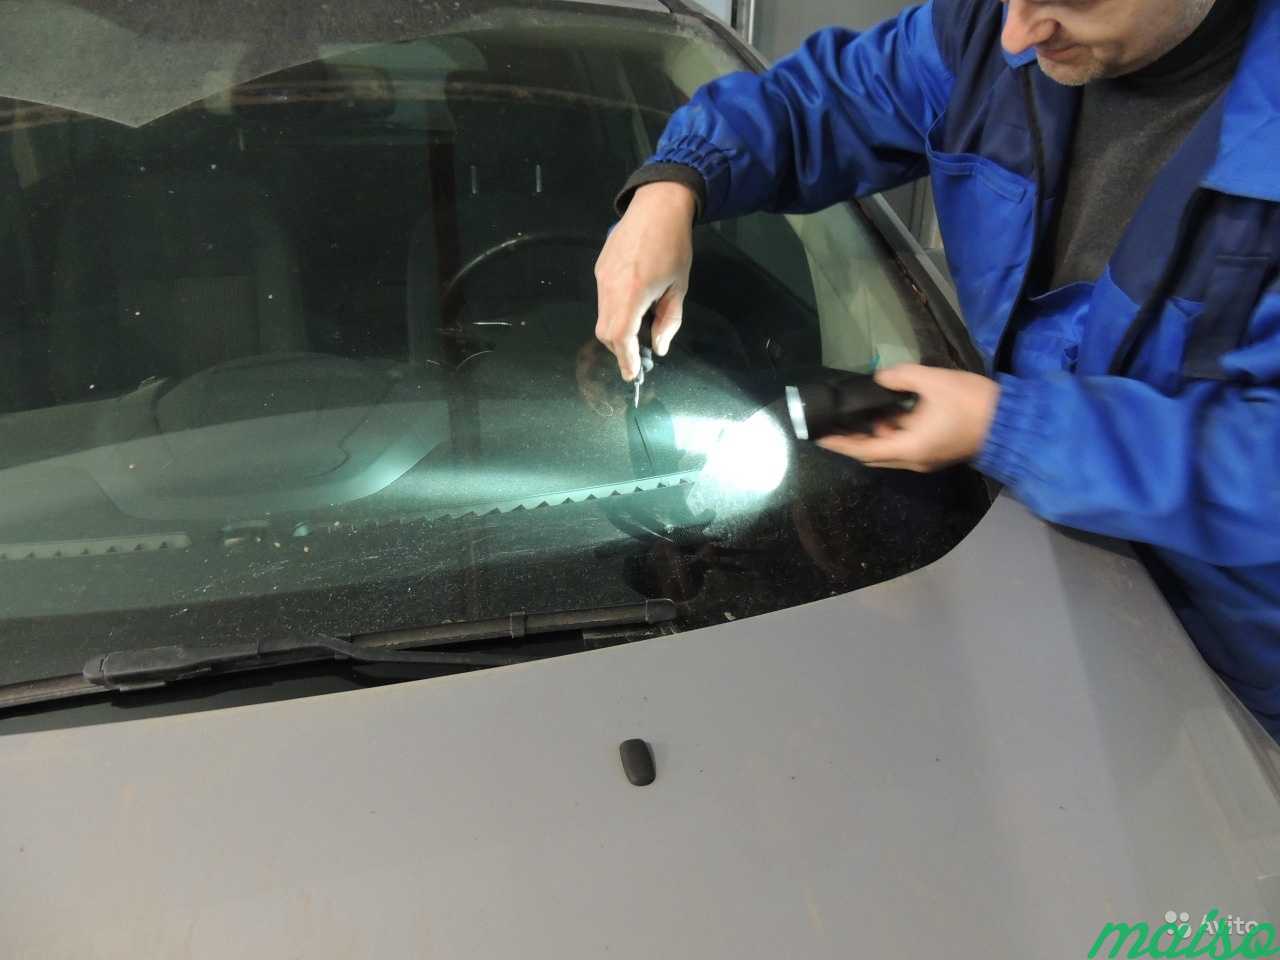 Отремонтировать лобовое стекло своими руками. Фирмы лобовых стекол. Шлифовка сколов на стеклянной вазе. Процесс образования скола на автомобильном стекле. Ремонт сколов и трещин на лобовом стекле.